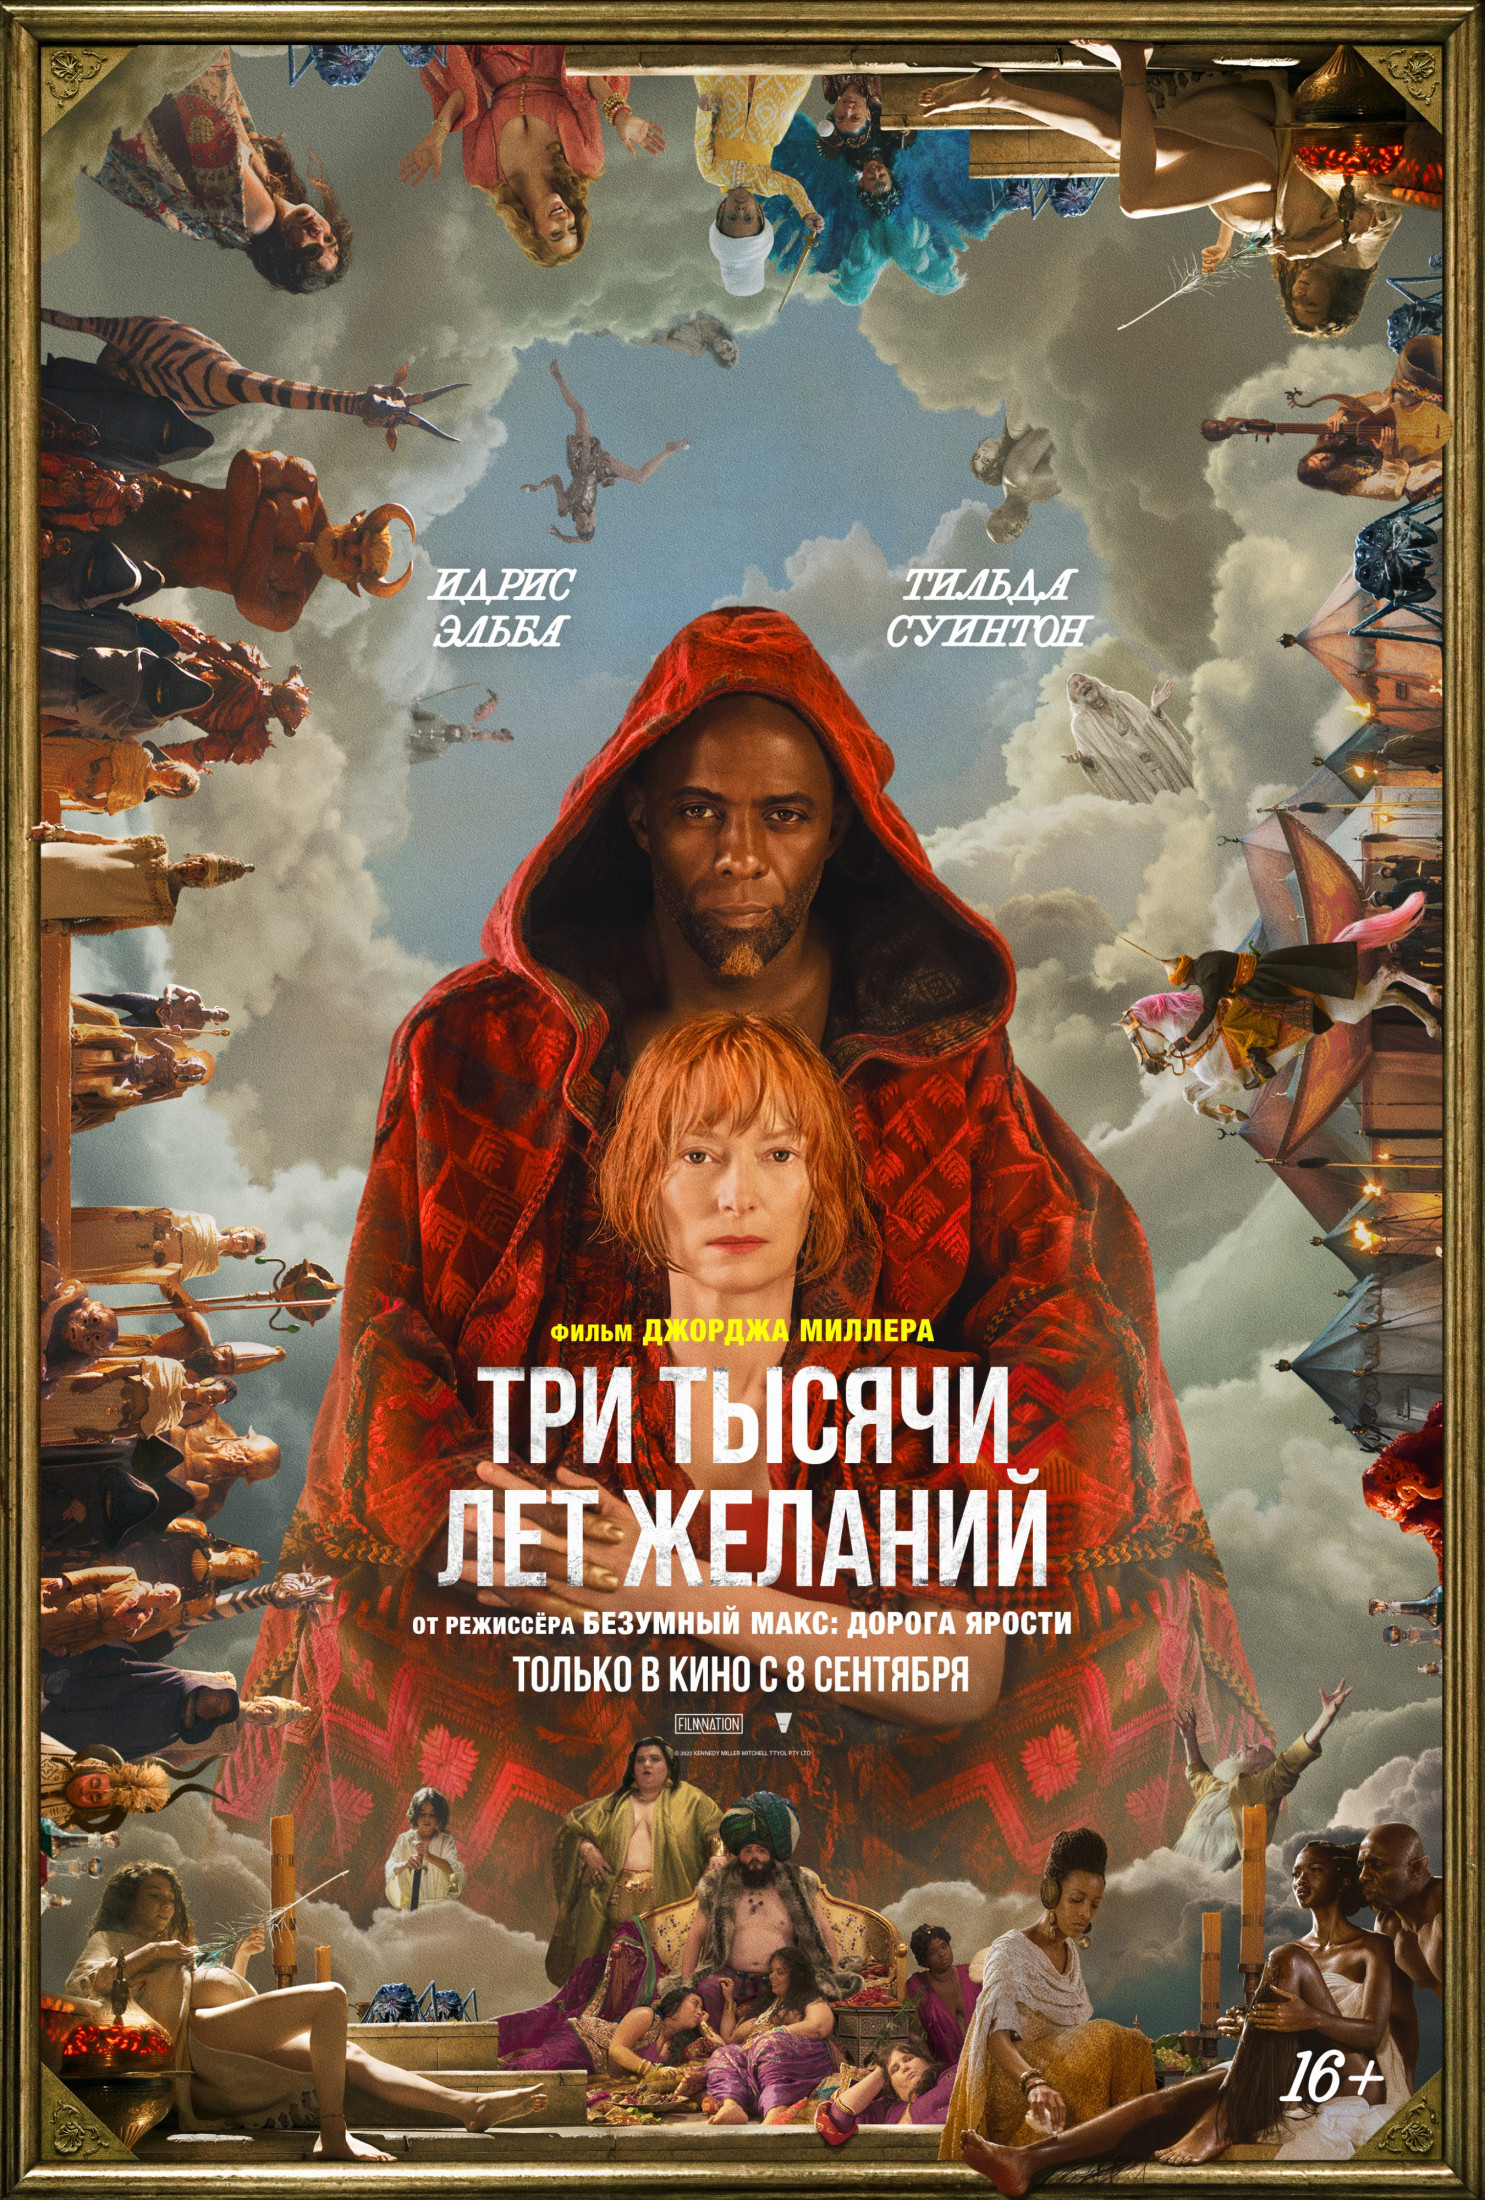 ТРИ ТЫСЯЧИ ЛЕТ ЖЕЛАНИЙ - новый фильм Джорджа Миллера выйдет в России!